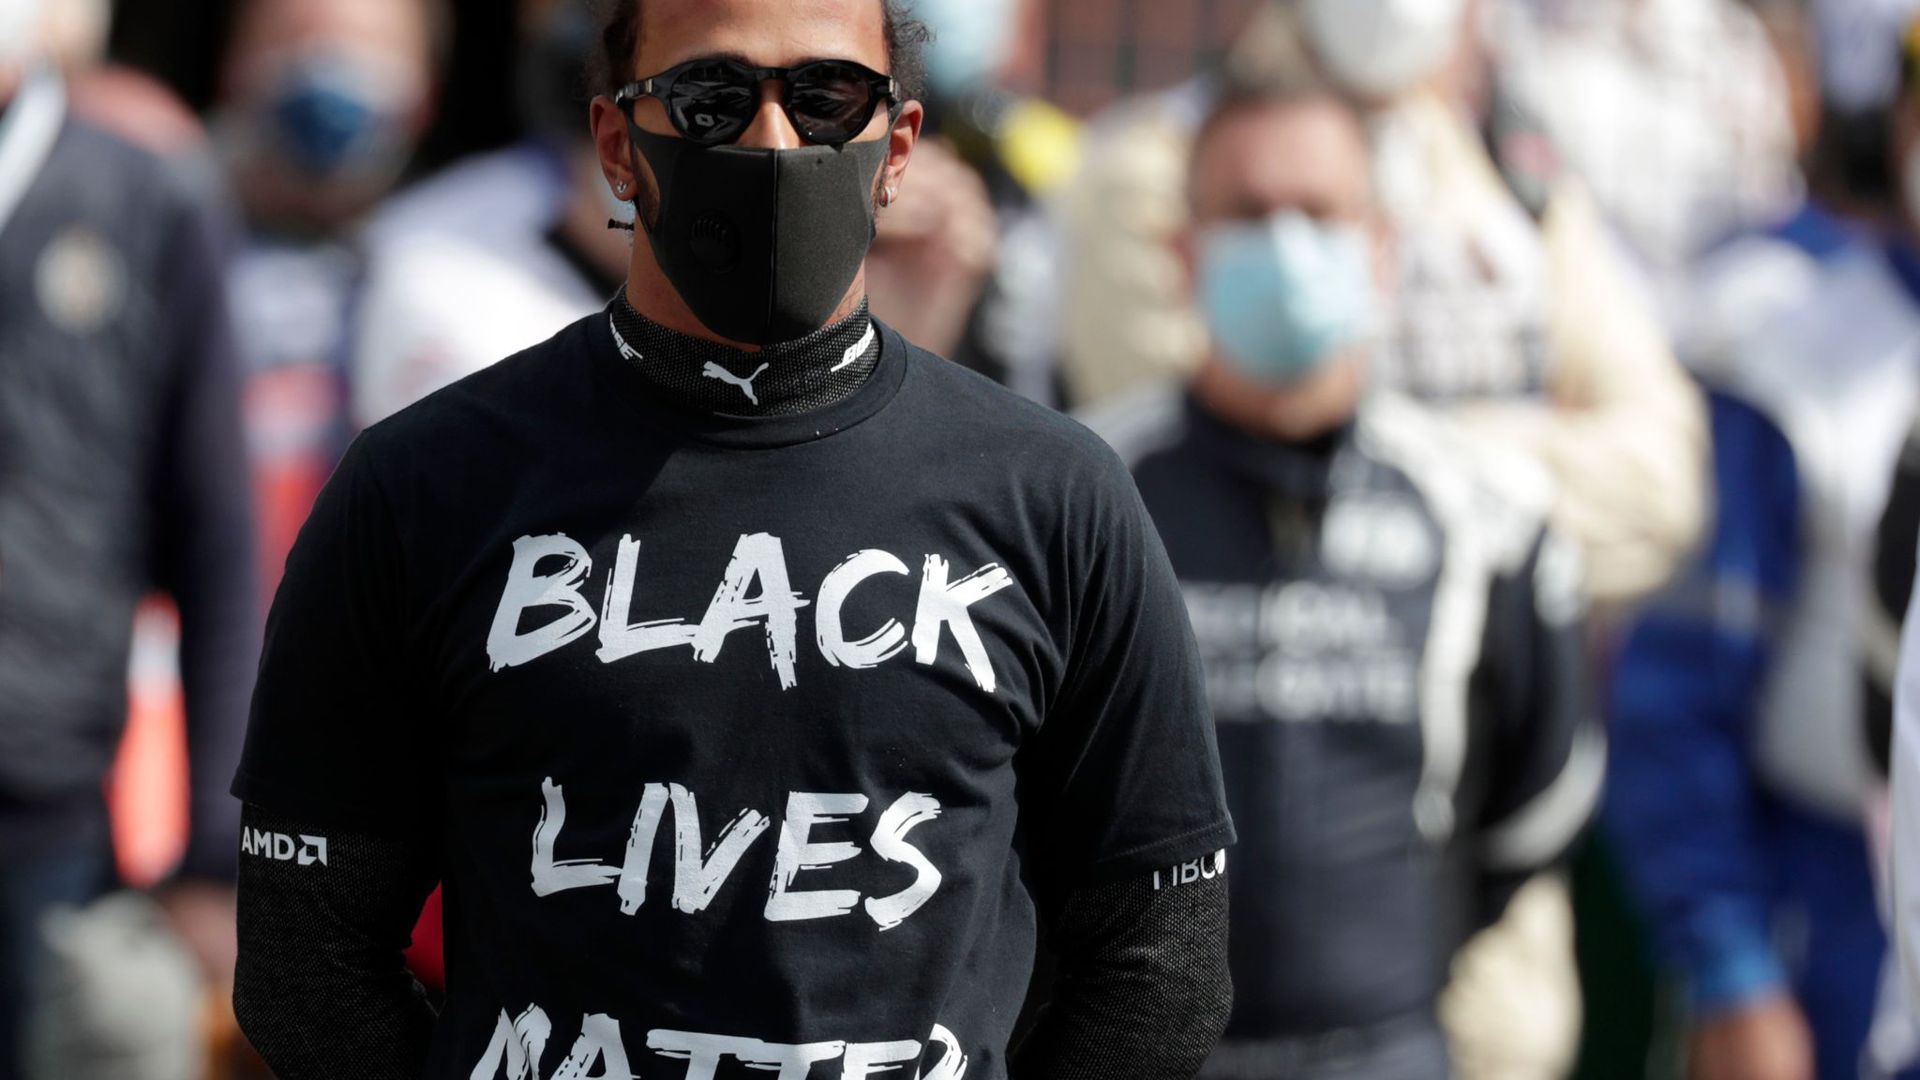 Formel-1-Weltmeister Lewis Hamilton bezieht klar Stellung: „Black lives Matter“.